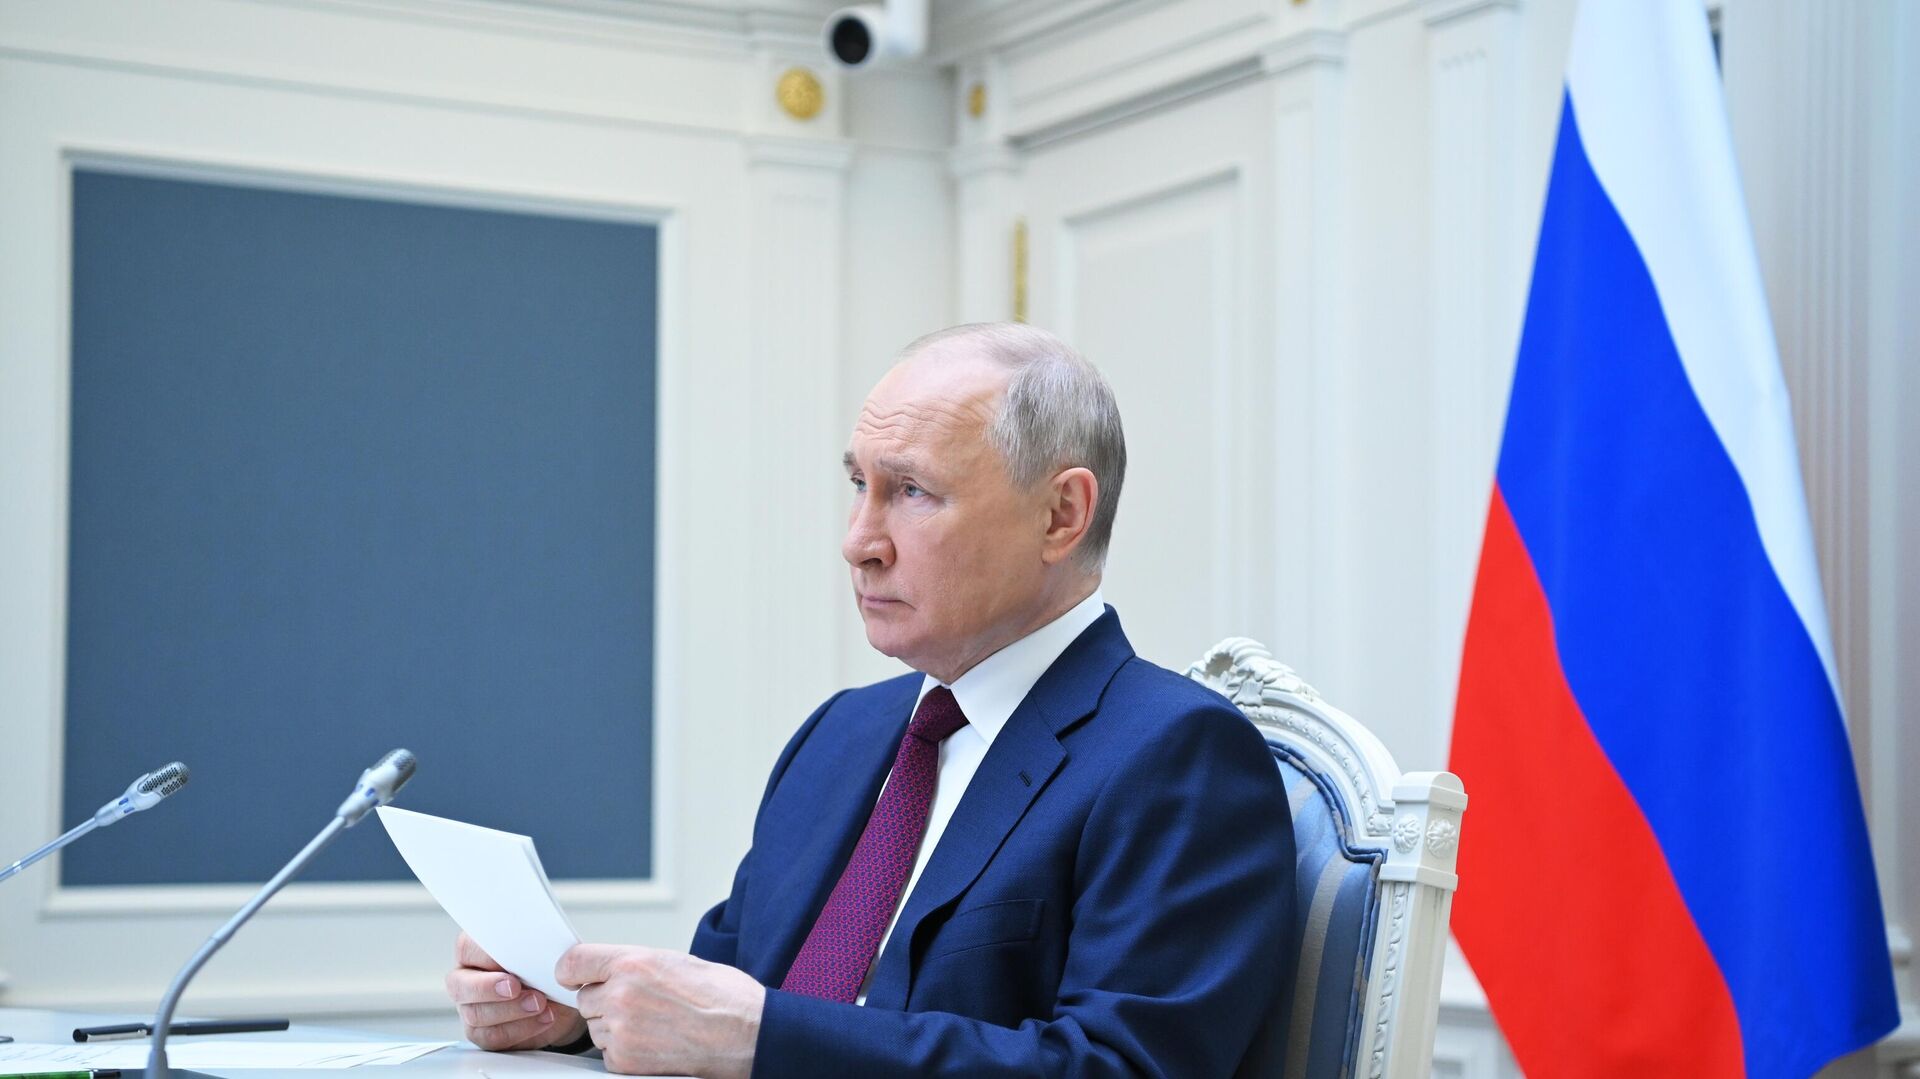 Vladimir Putin takes part in SCO meeting - Sputnik International, 1920, 04.07.2023